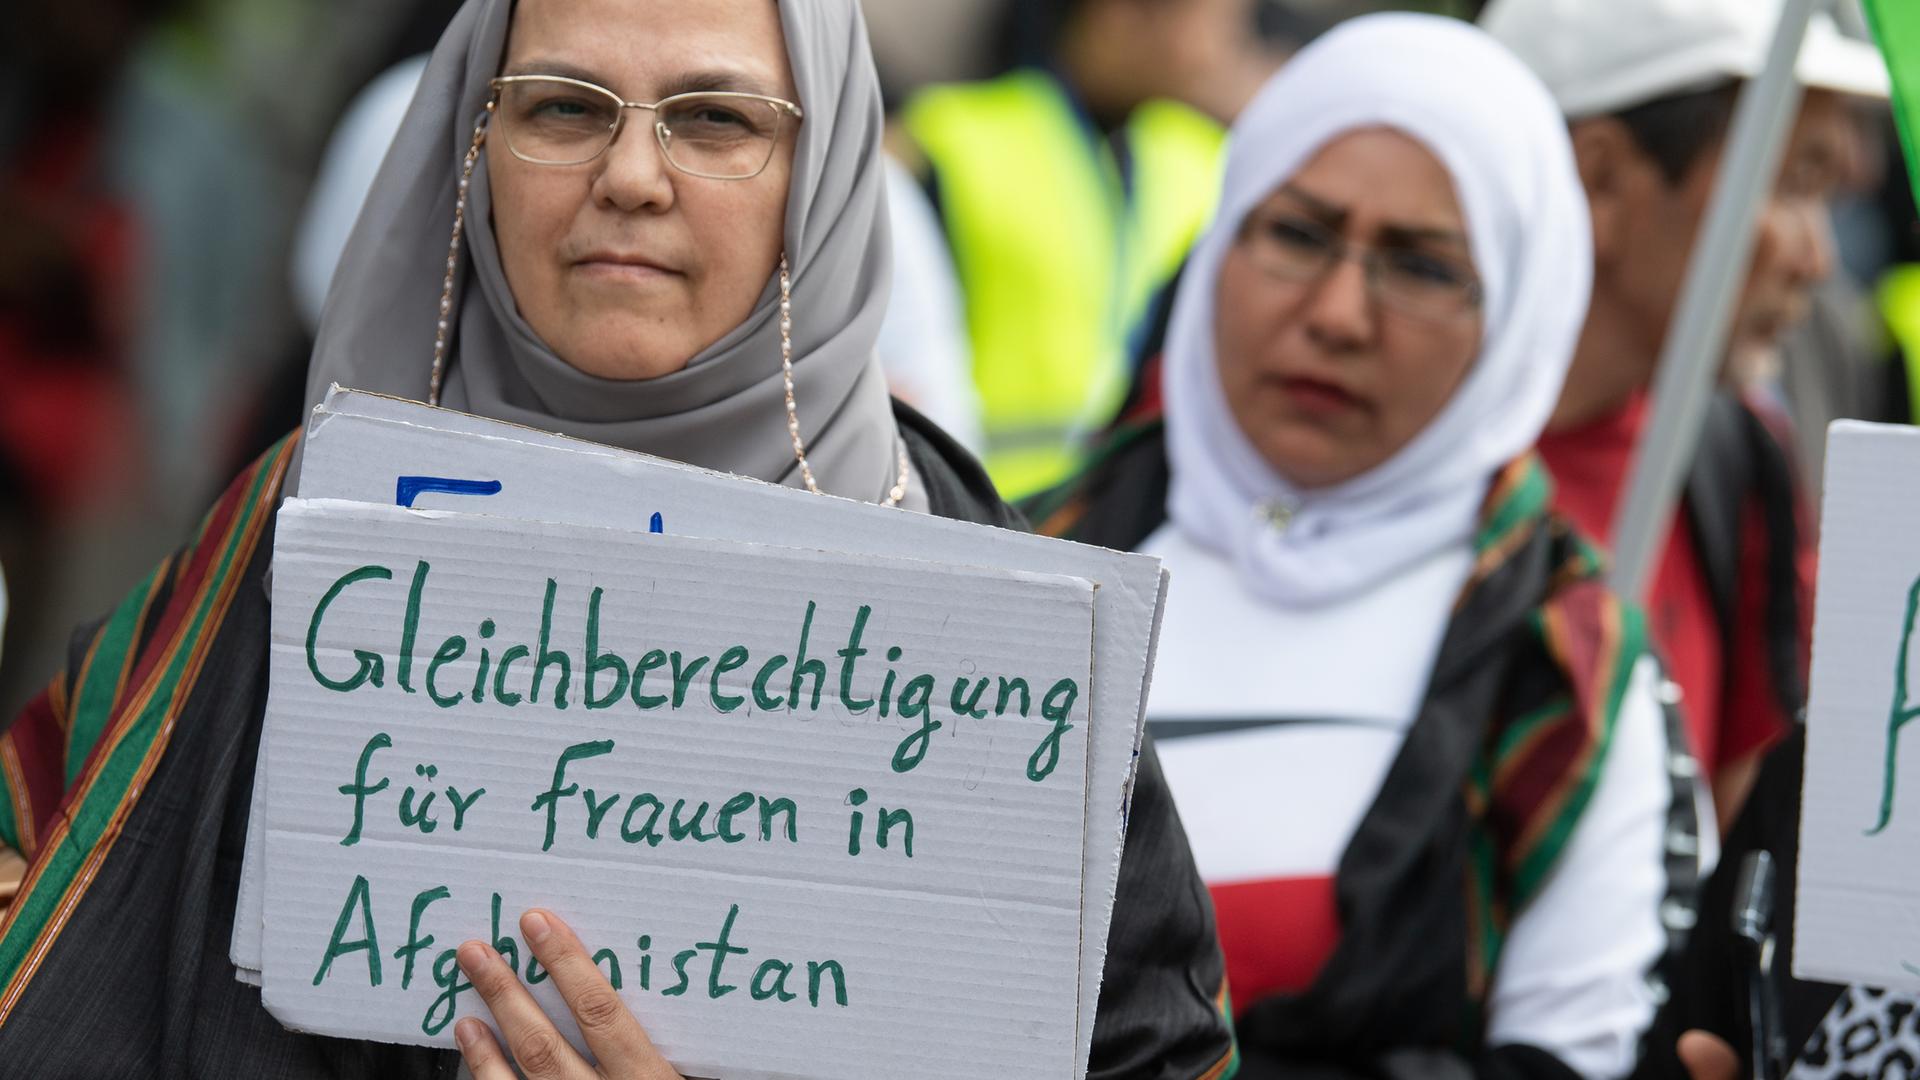 Exil-Afghaninnen demonstrieren in der Innenstadt von Frankfurt gegen das Taliban-Regime, Unterdrückung und für Frauenrechte. Auf dem Schild einer Teilnehmerin steht "Gleichberechtigung für Frauen in Afghanistan".